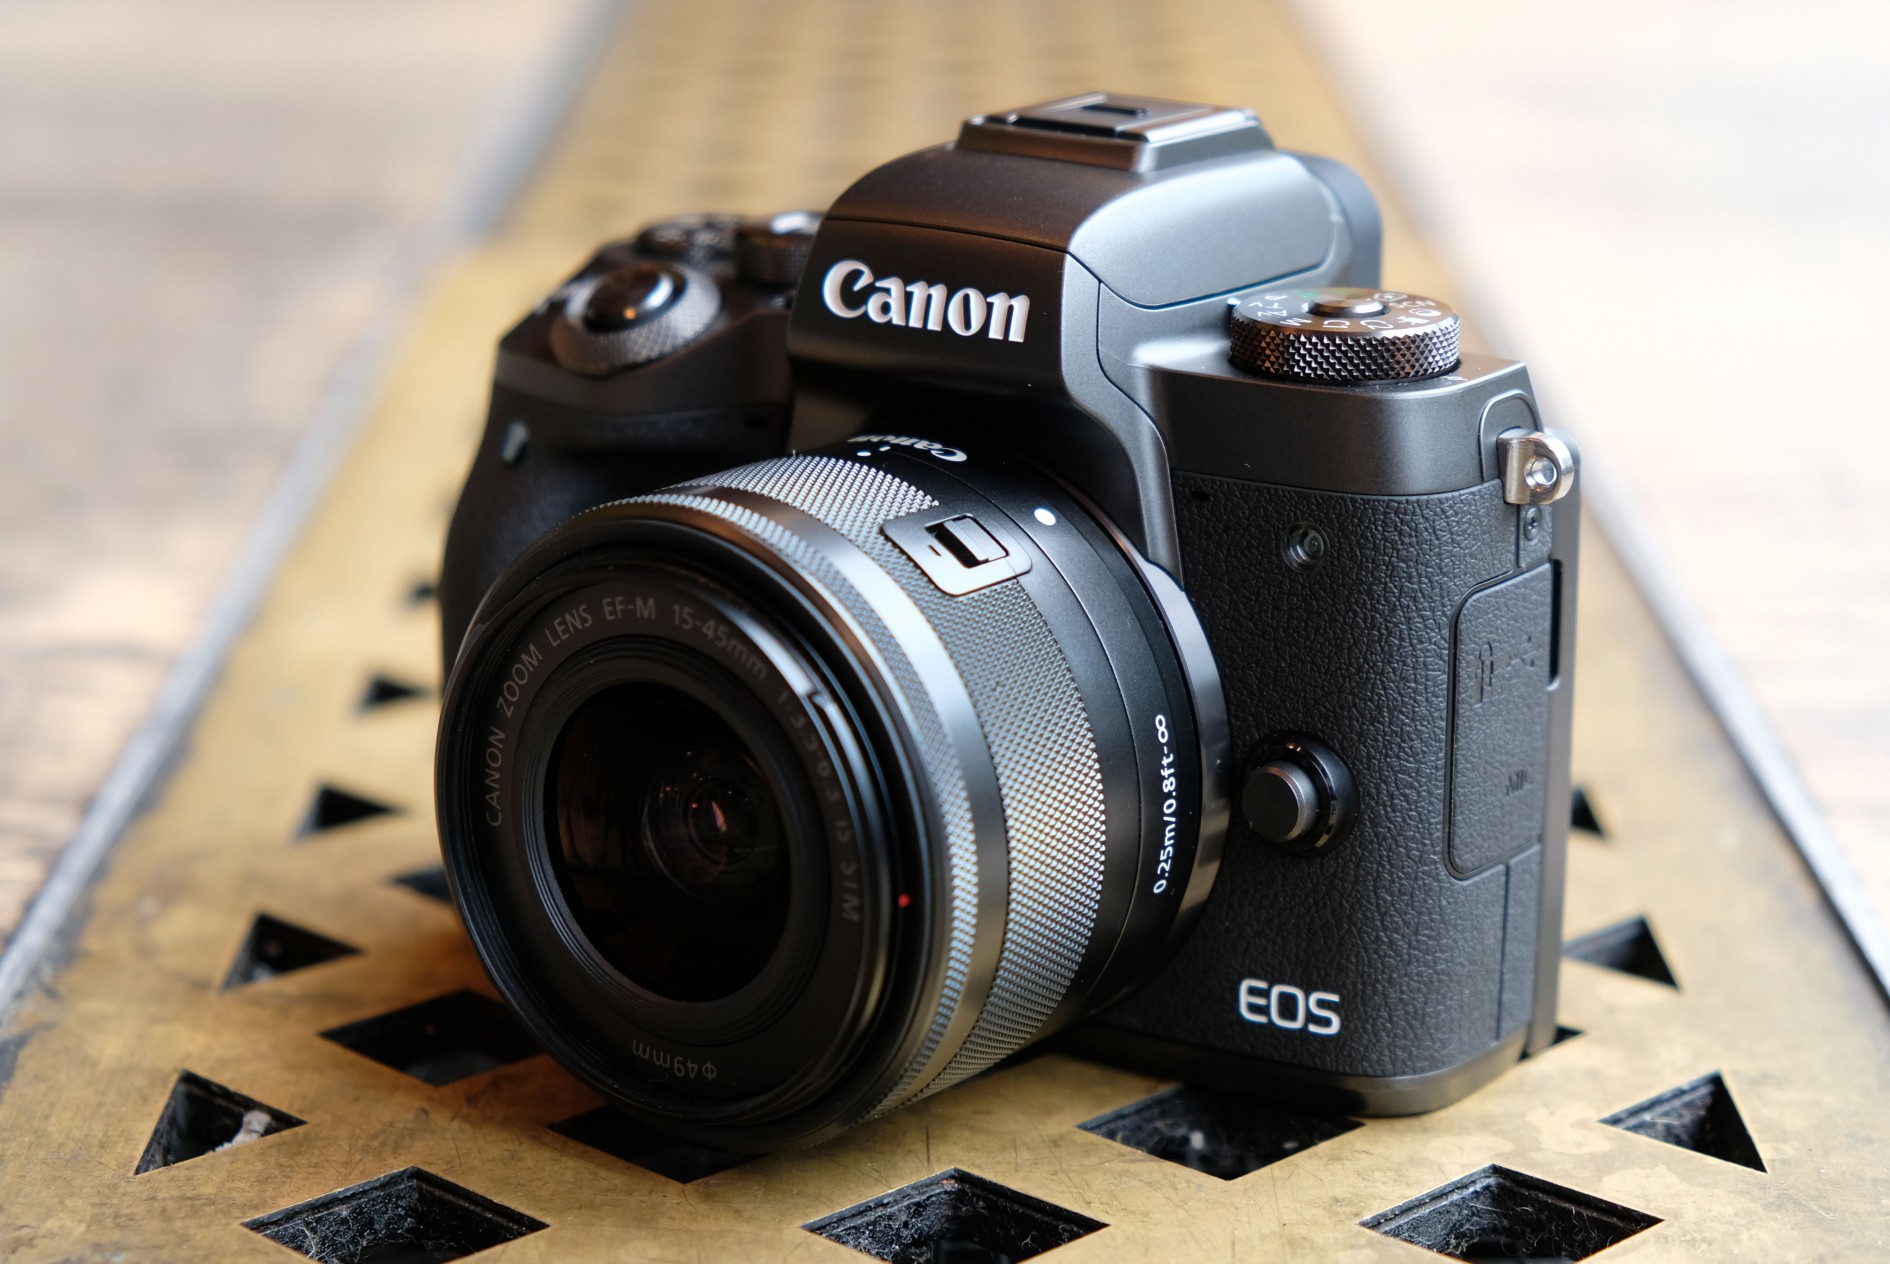 Kamera Canon Eos M50 - Homecare24